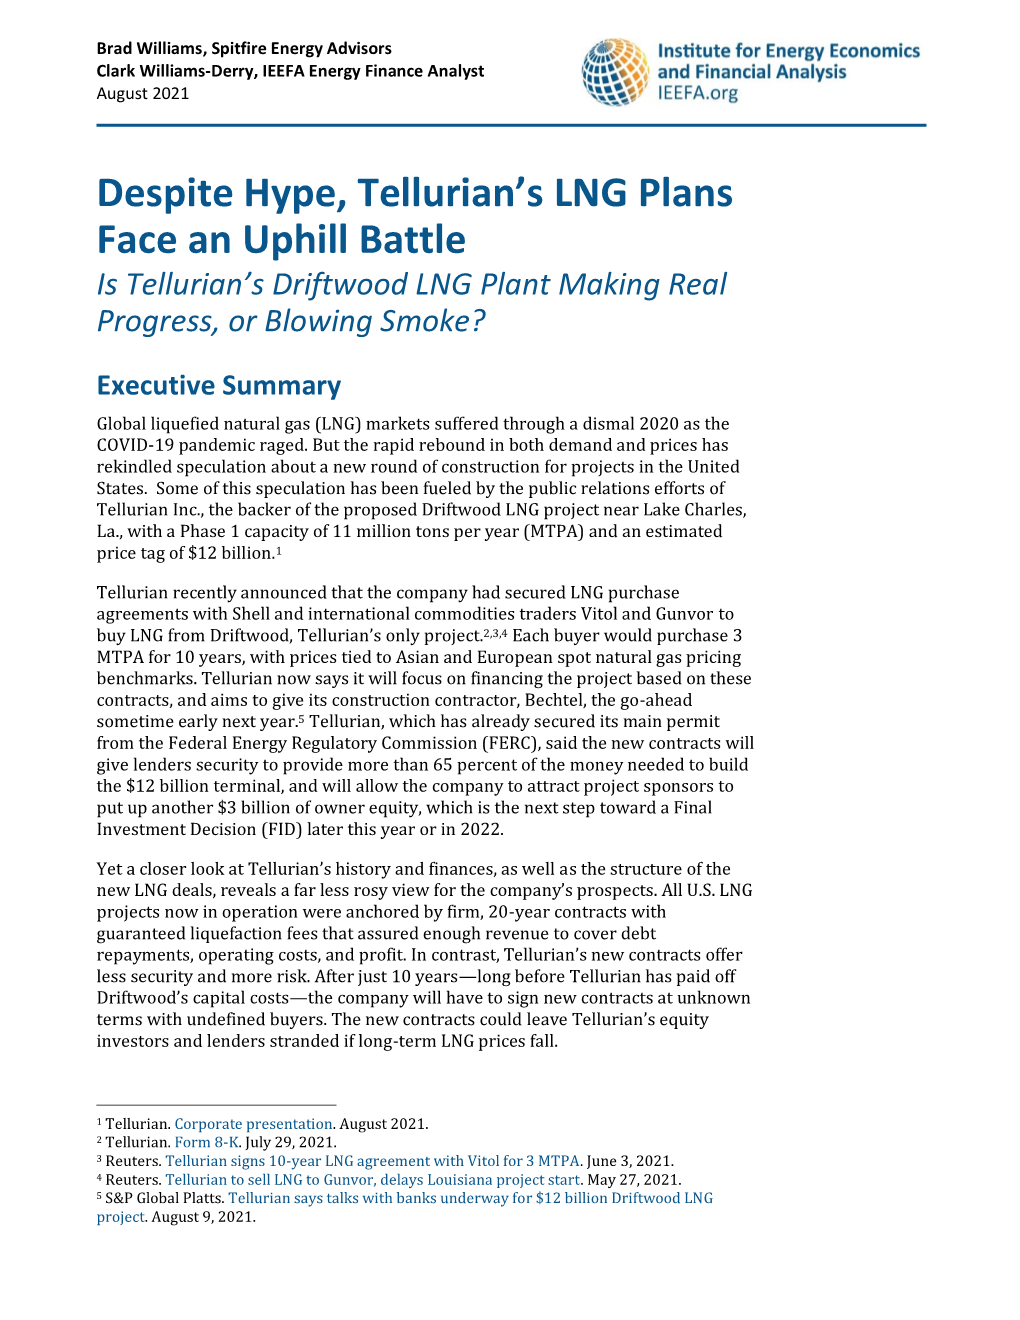 Despite Hype, Tellurian's LNG Plans Face an Uphill Battle